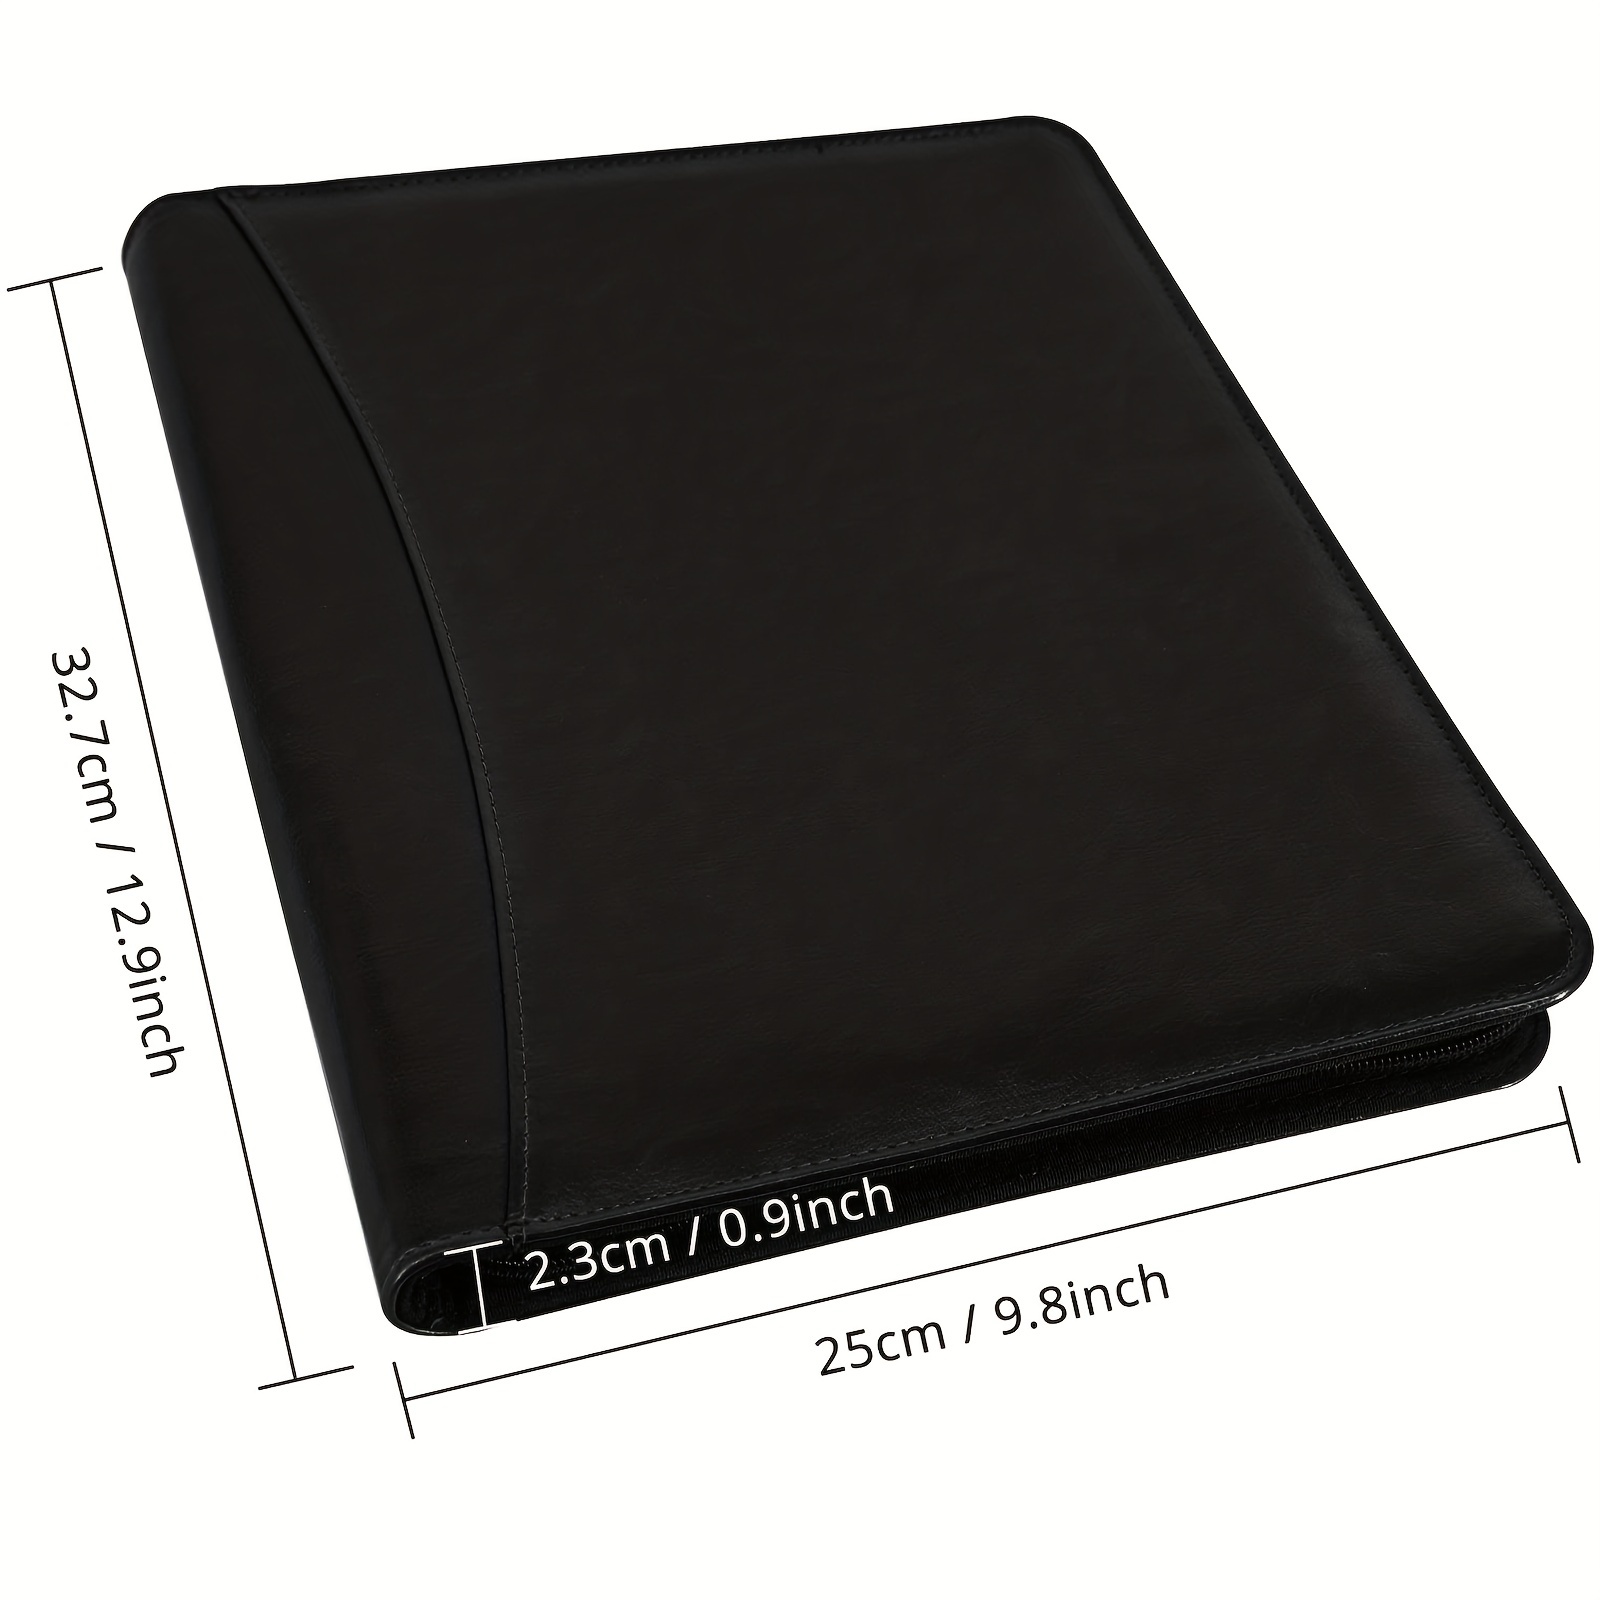 Leather Binder Portfolio Notebook Zippered Folio Business Interview  Organizer US